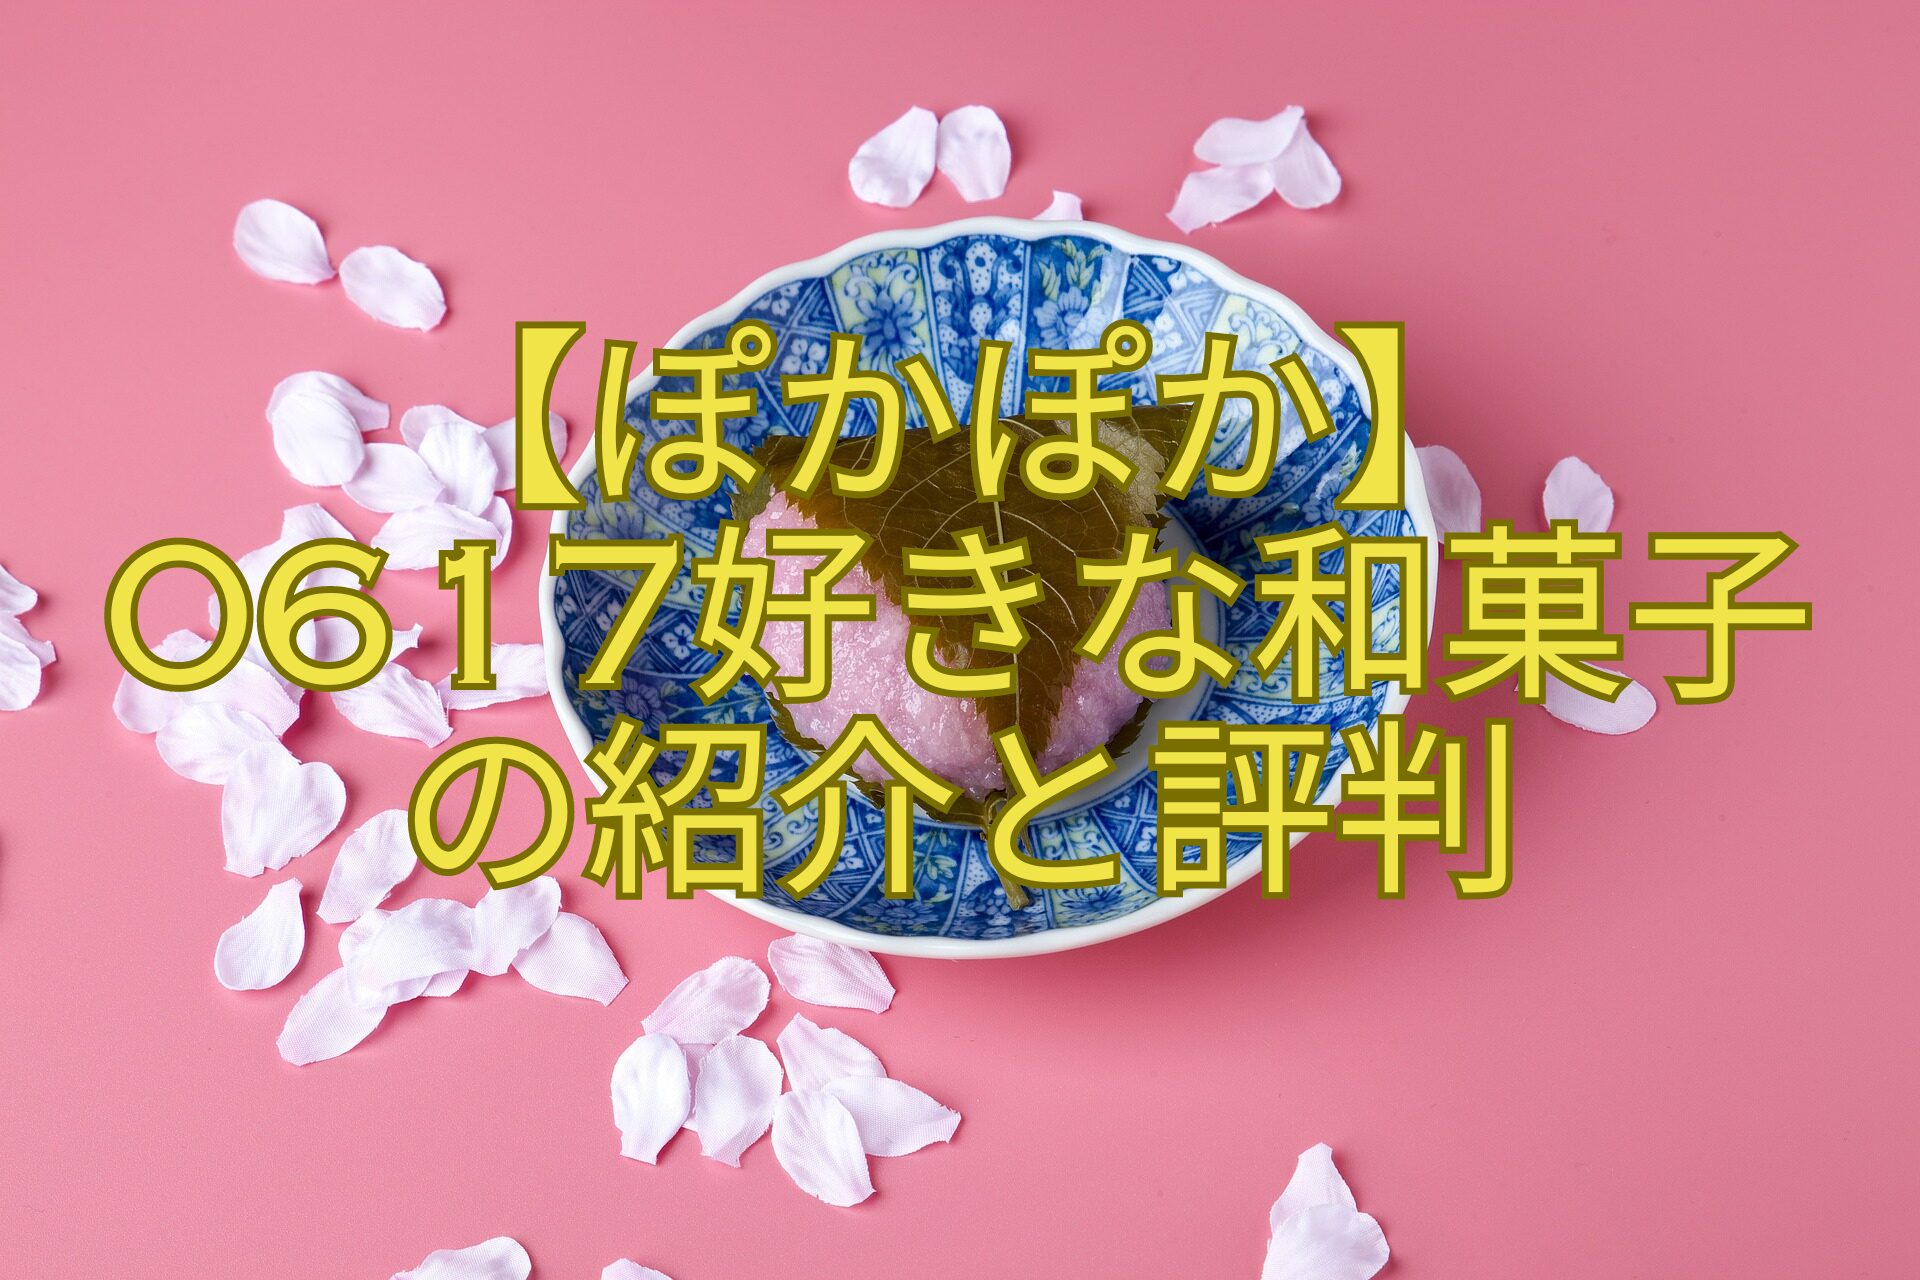 【ぽかぽか】-0617好きな和菓子-の紹介と評判